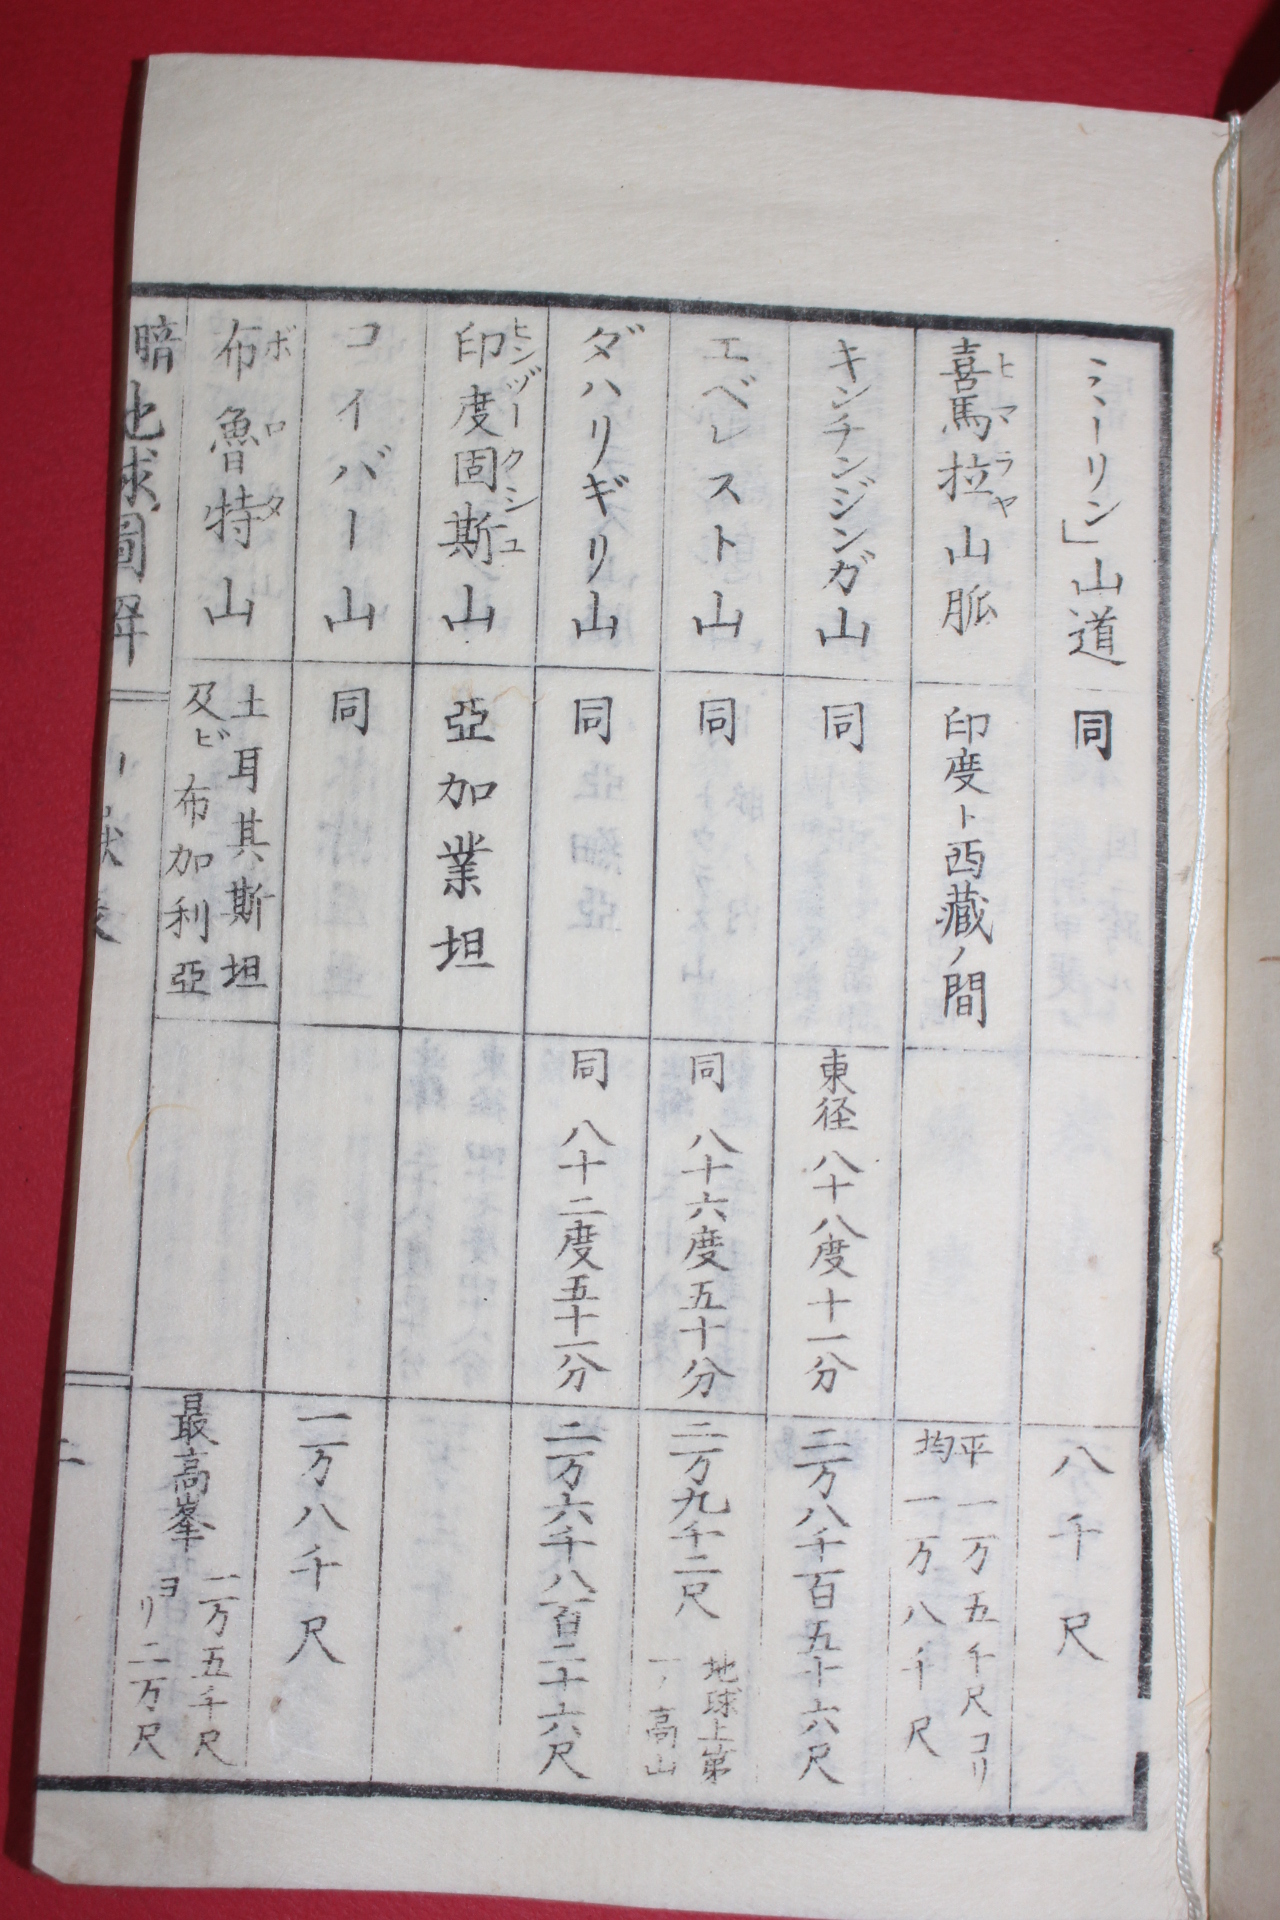 1875년(명치8년) 일본목판본 암사지구도해(暗射地球圖解) 하권